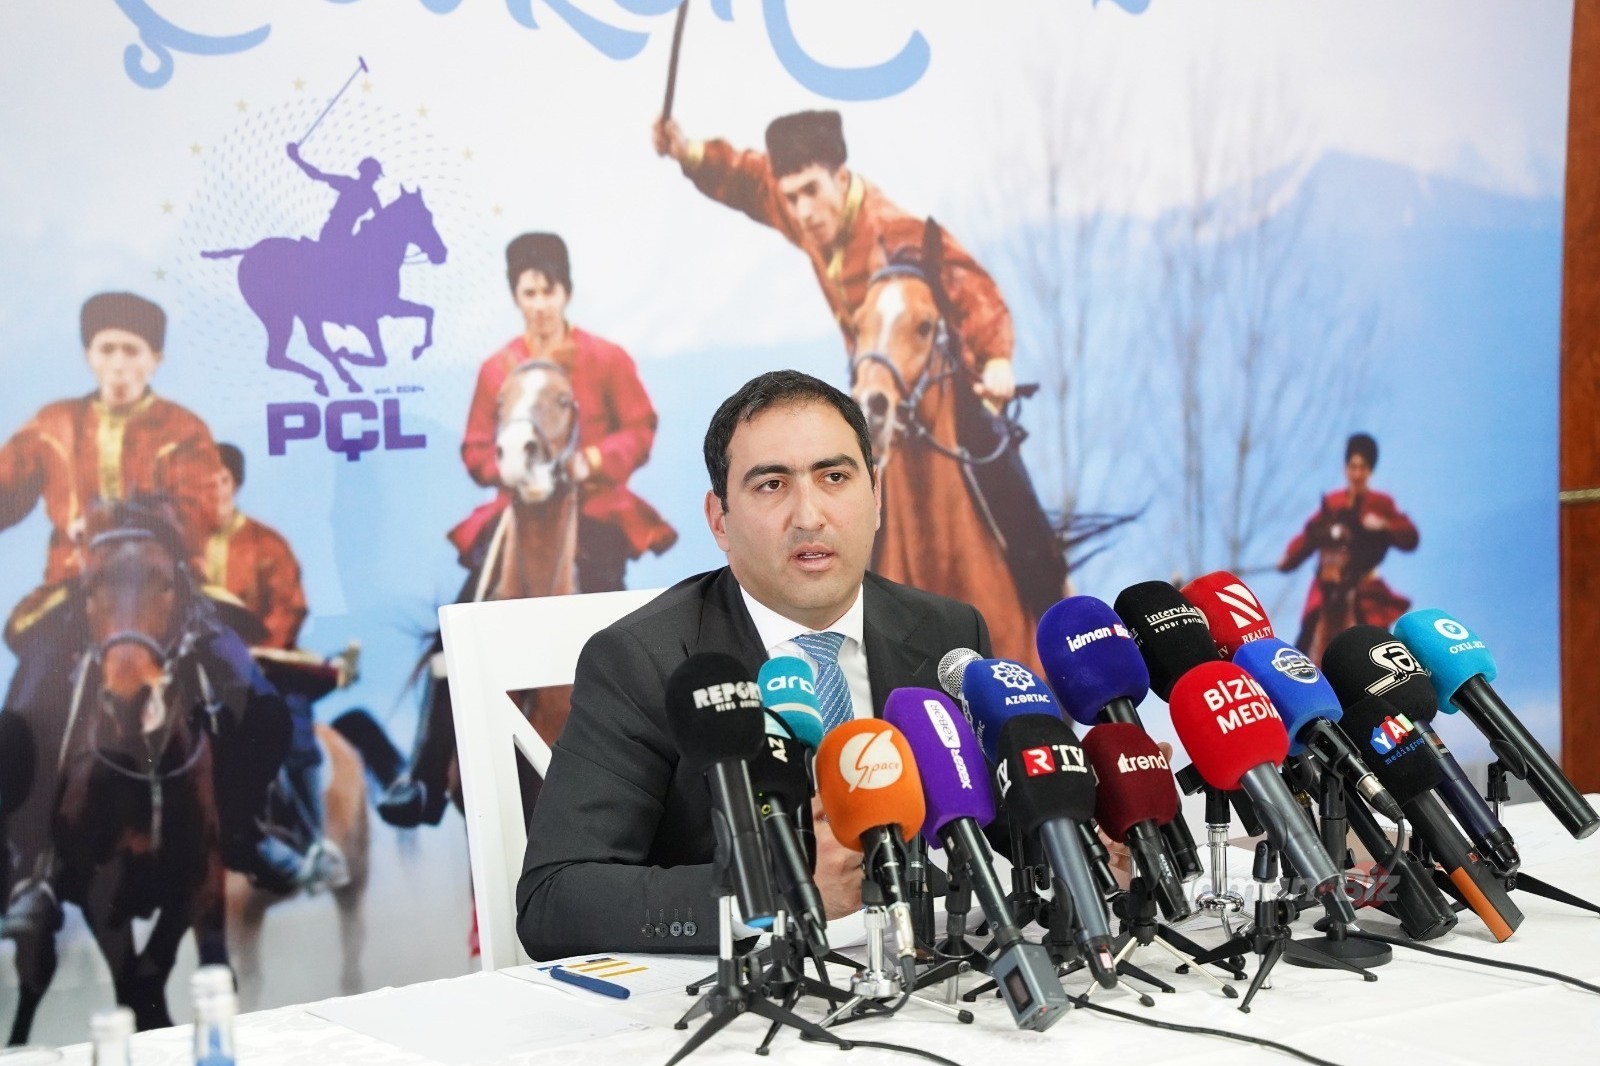 Федерация конного спорта Азербайджана обратилась к спонсорам: "Есть новые проекты" -  ВИДЕО